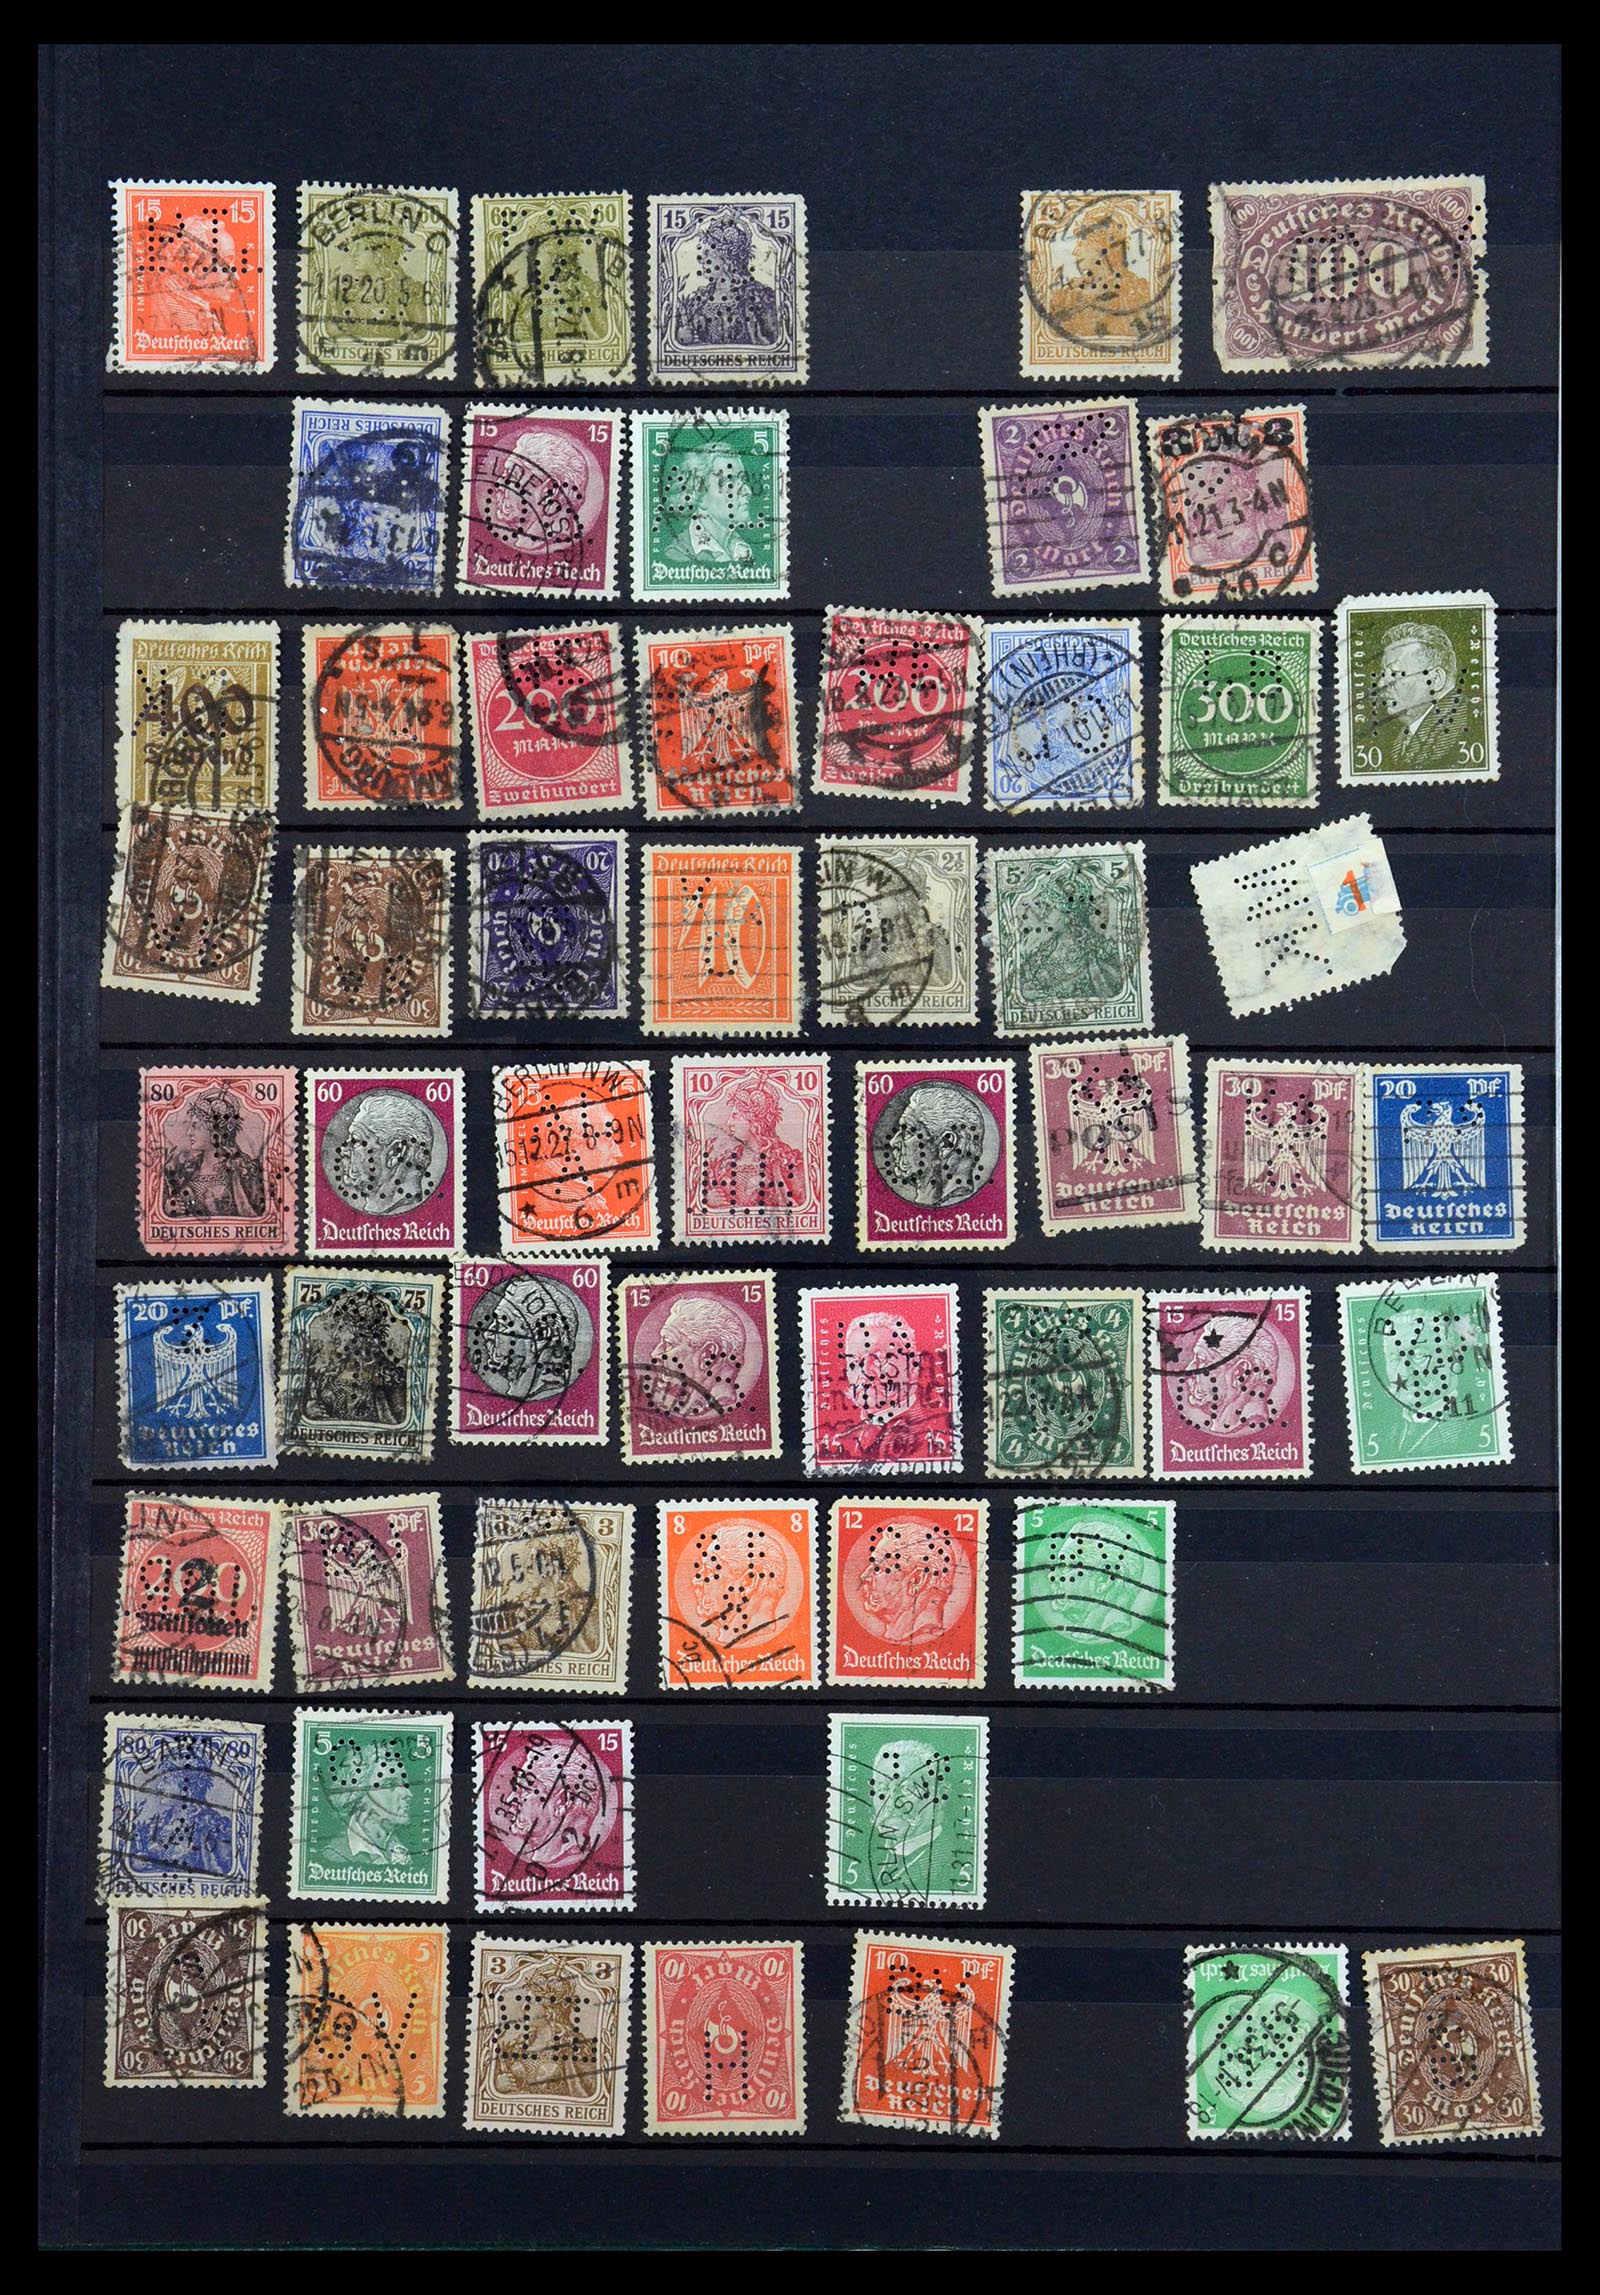 35183 018 - Stamp Collection 35183 German Reich perfins 1880-1945.